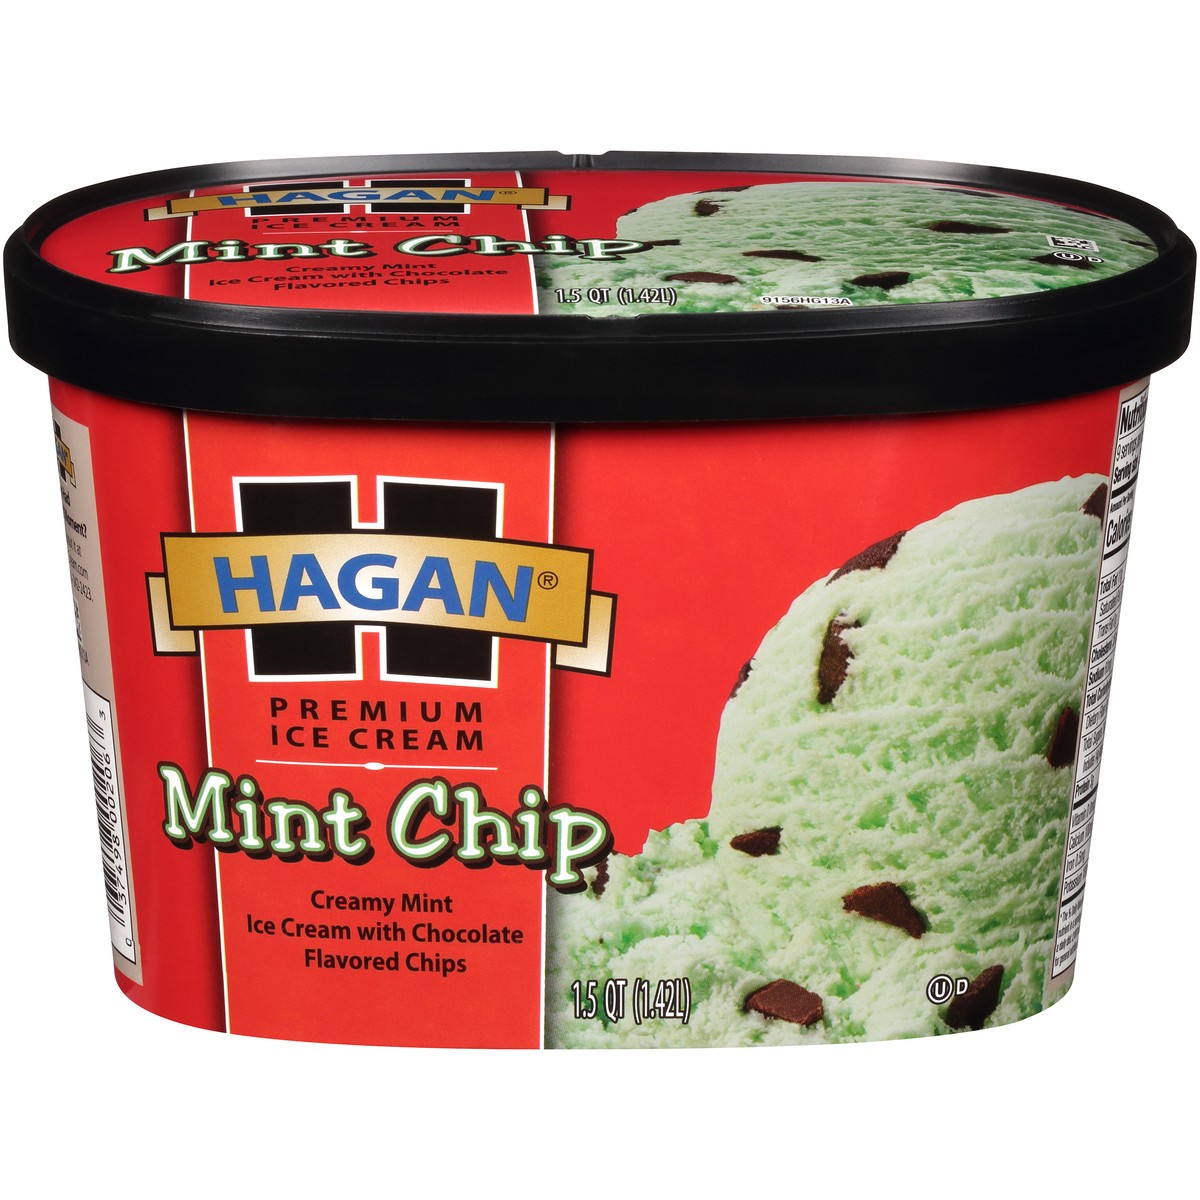 slide 1 of 10, Hagan Mint Chip Premium Ice Cream 1.5 qt. Tub, 1.42 liter